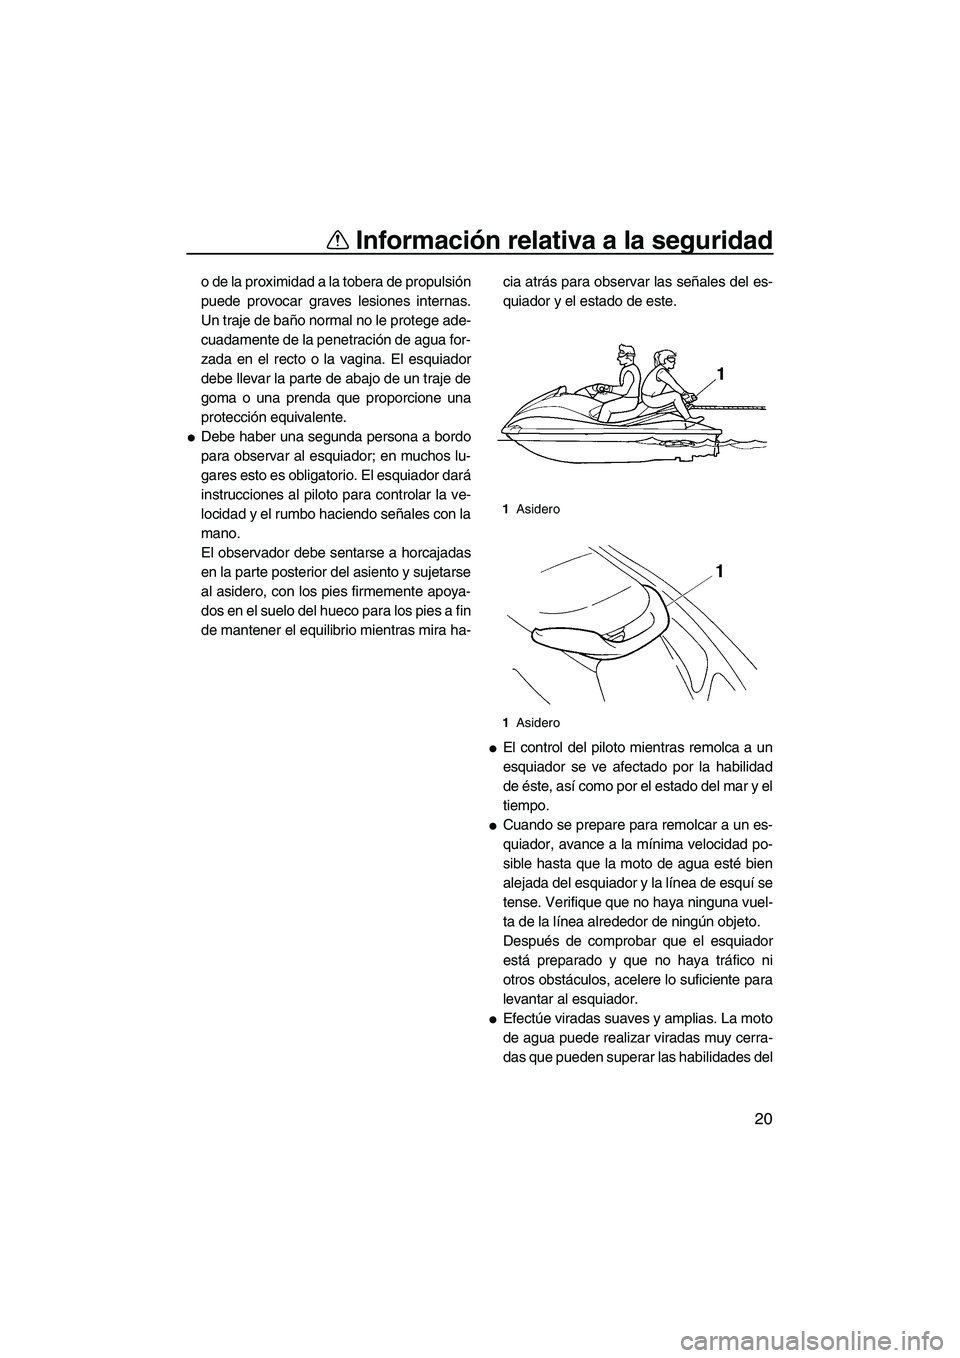 YAMAHA VX SPORT 2007  Manuale de Empleo (in Spanish) Información relativa a la seguridad
20
o de la proximidad a la tobera de propulsión
puede provocar graves lesiones internas.
Un traje de baño normal no le protege ade-
cuadamente de la penetración